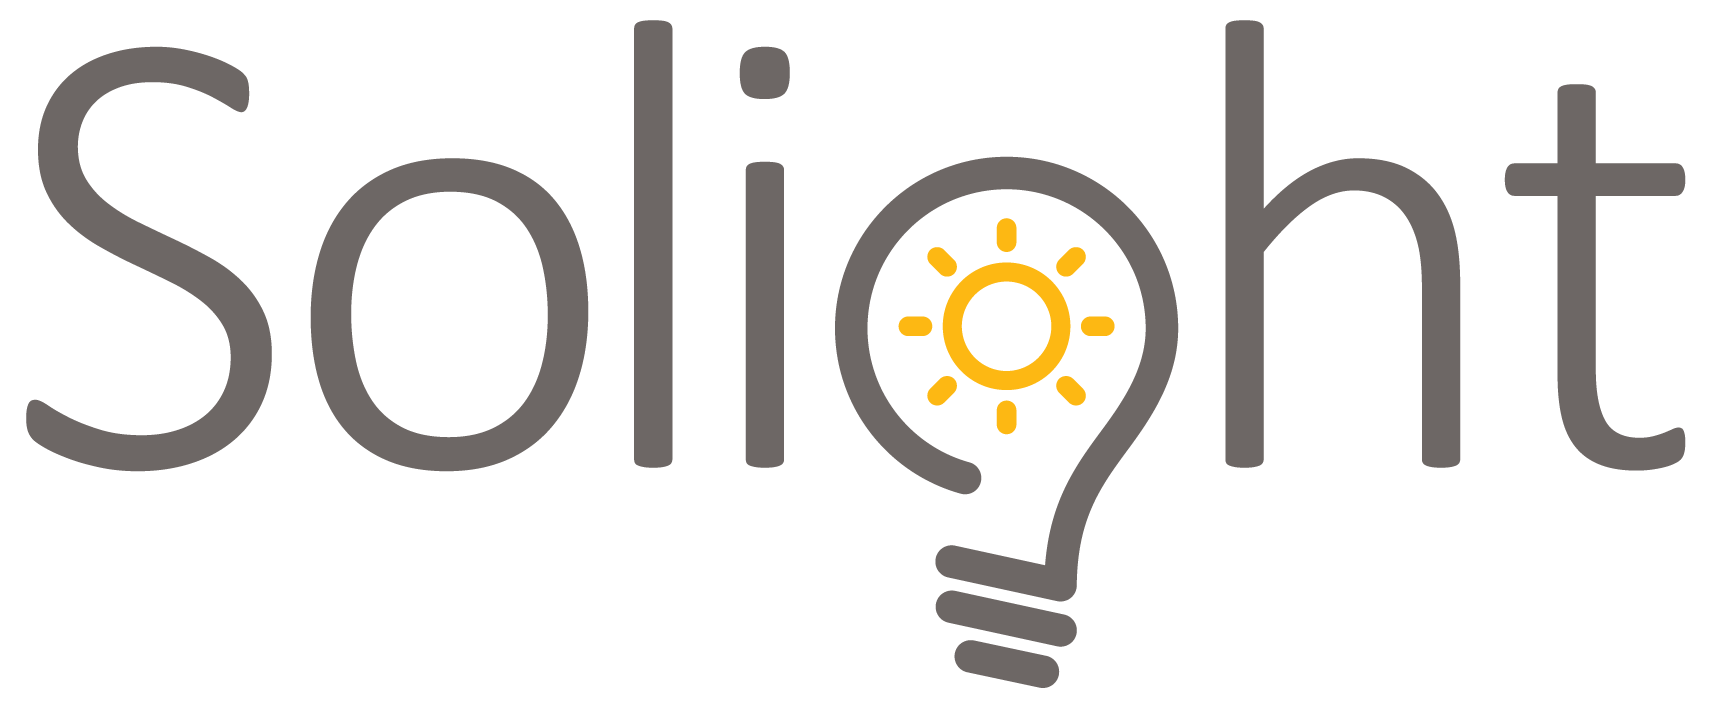 Solight logo